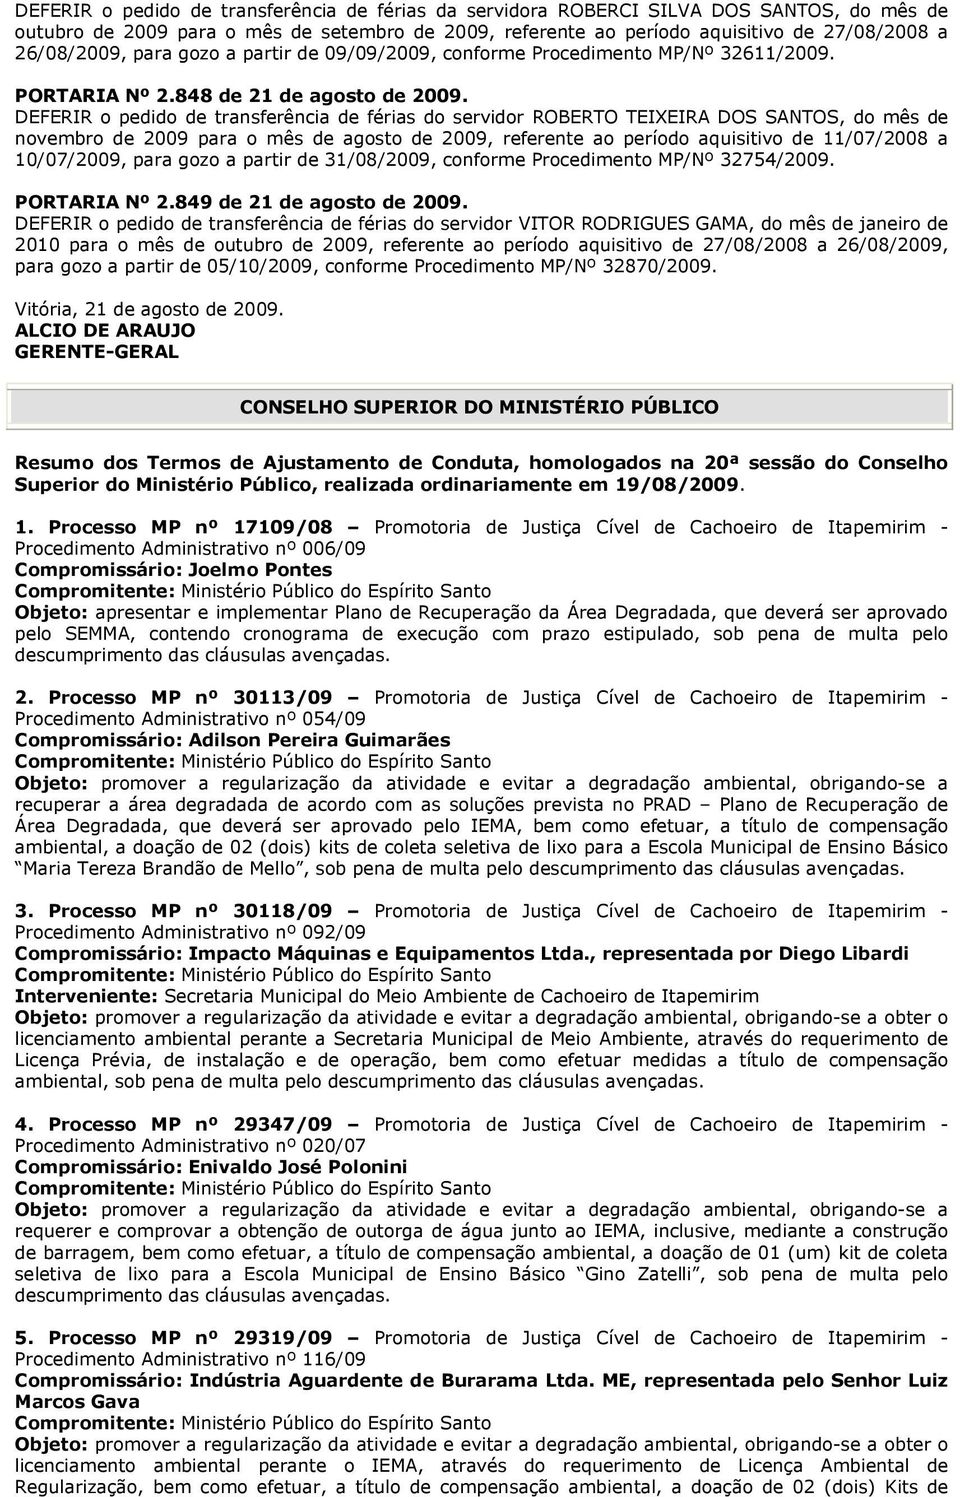 DEFERIR o pedido de transferência de férias do servidor ROBERTO TEIXEIRA DOS SANTOS, do mês de novembro de 2009 para o mês de agosto de 2009, referente ao período aquisitivo de 11/07/2008 a